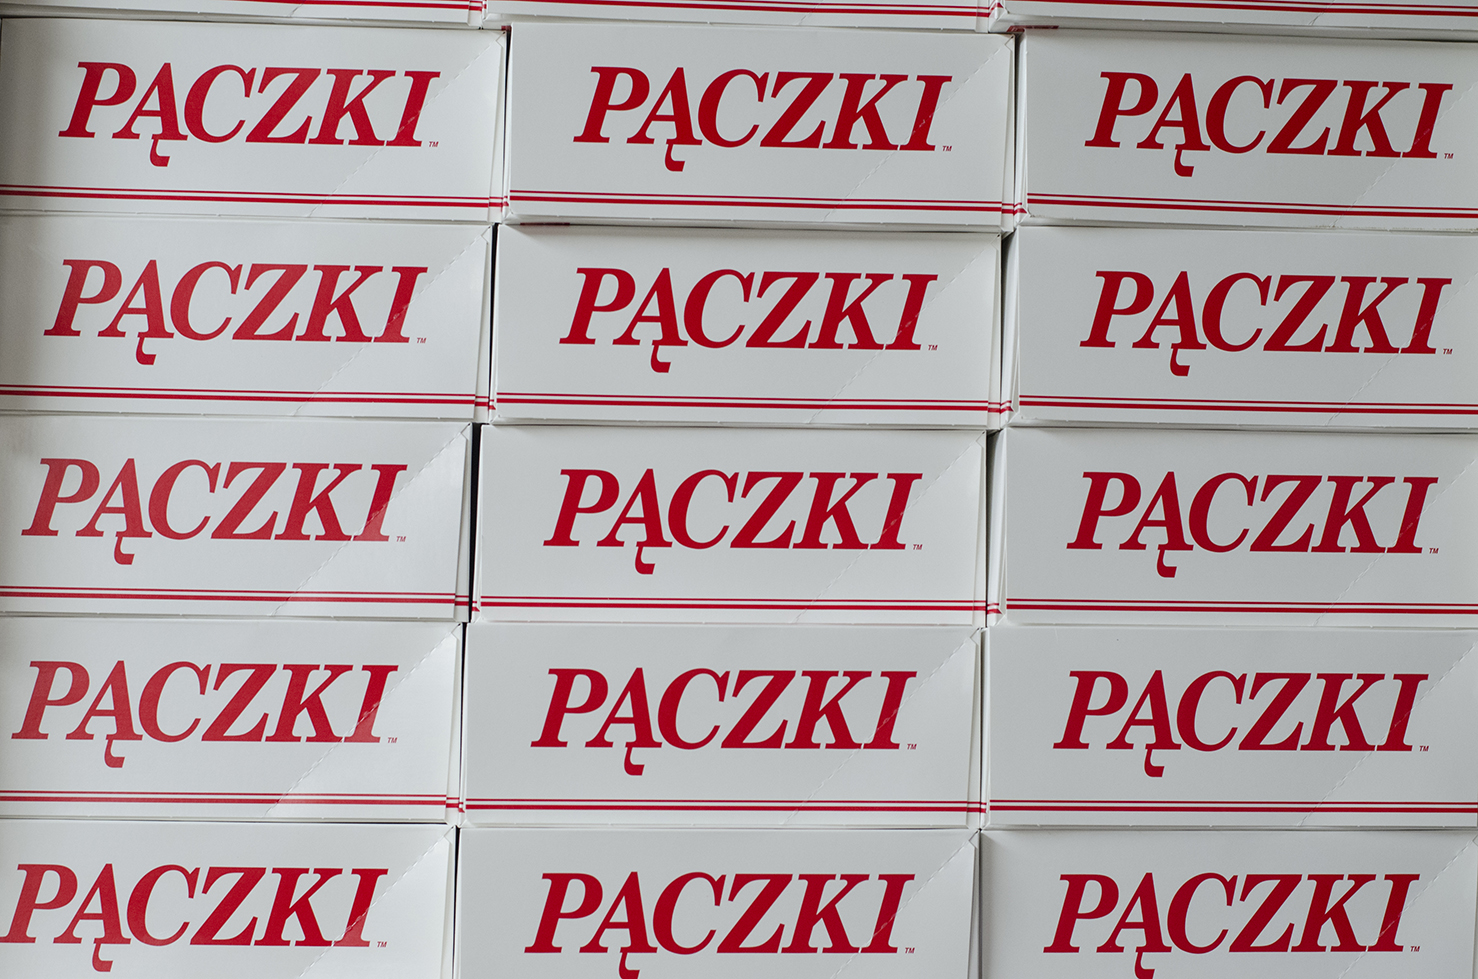 It's Paczki Day!!!